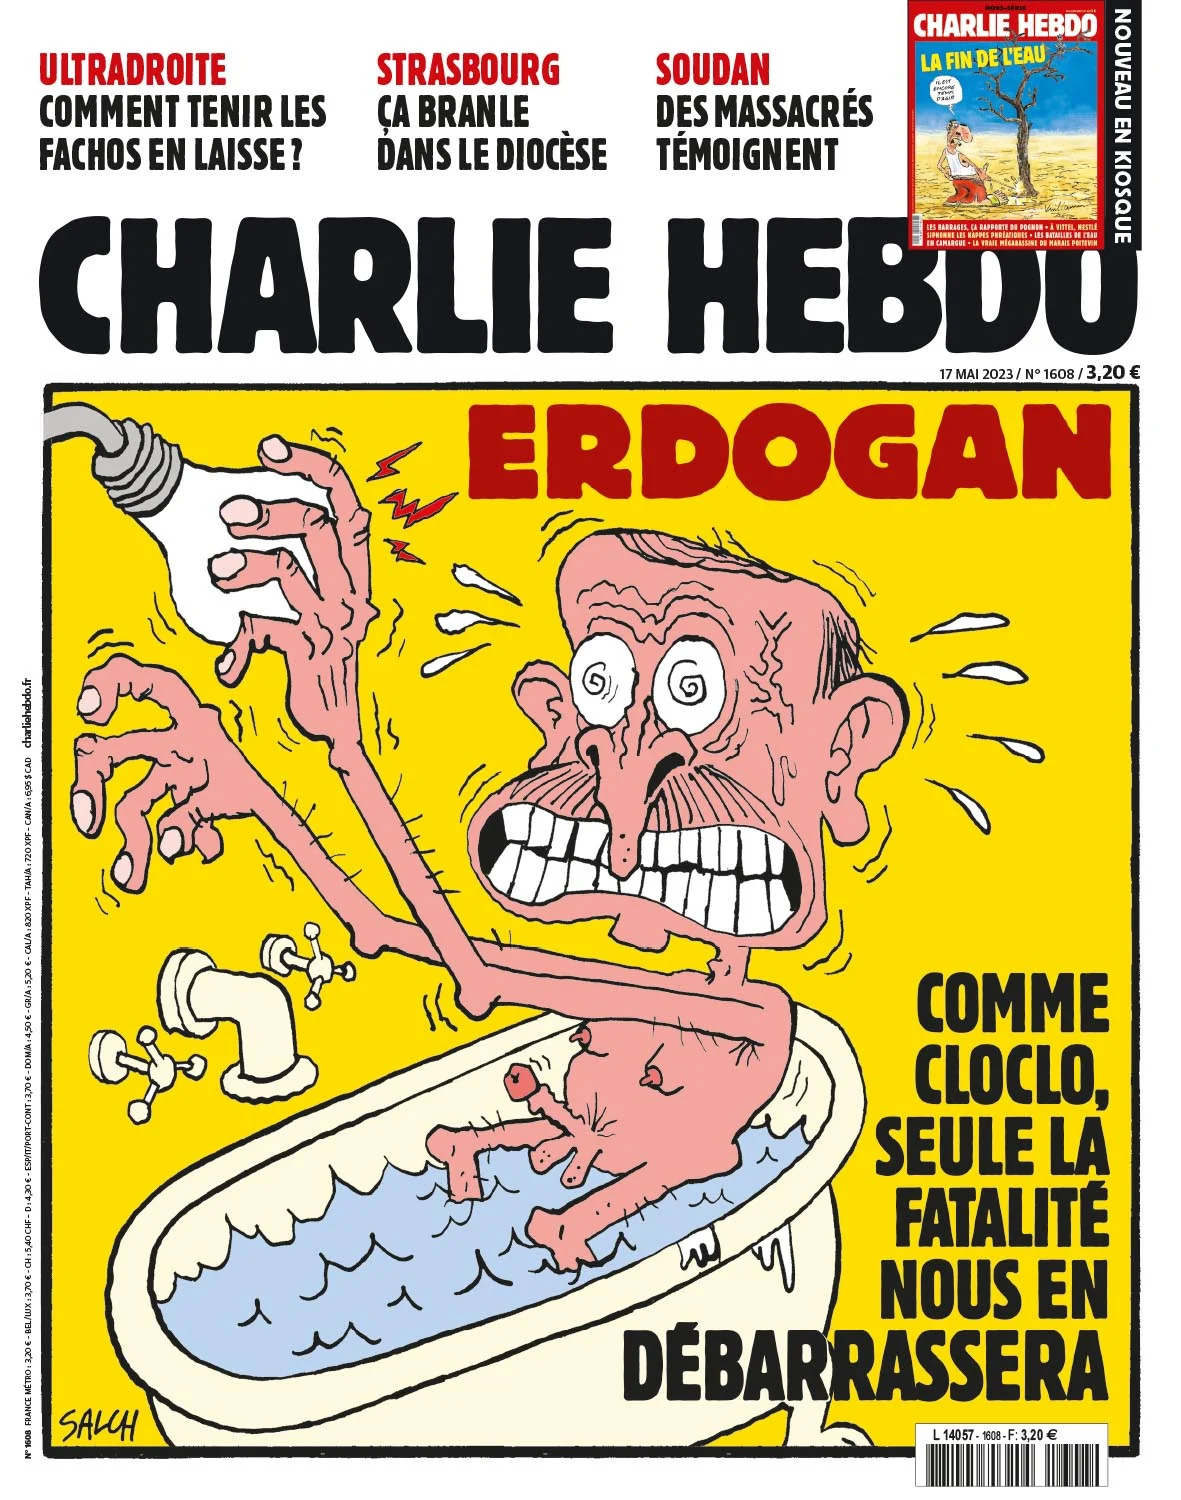 “ERDOGAN, VAIN KOHTALO VOI VAPAUTTAA MEIDÄT HÄNESTÄ!” - Tänään julkaistun numeron kansikuvaa koristaa alaston Erdoğan, joka saa sähköiskun lampusta ja seuraamuksena erektion. Erdoğanin perustaman AKP-puolueen logo on hehkulamppu.